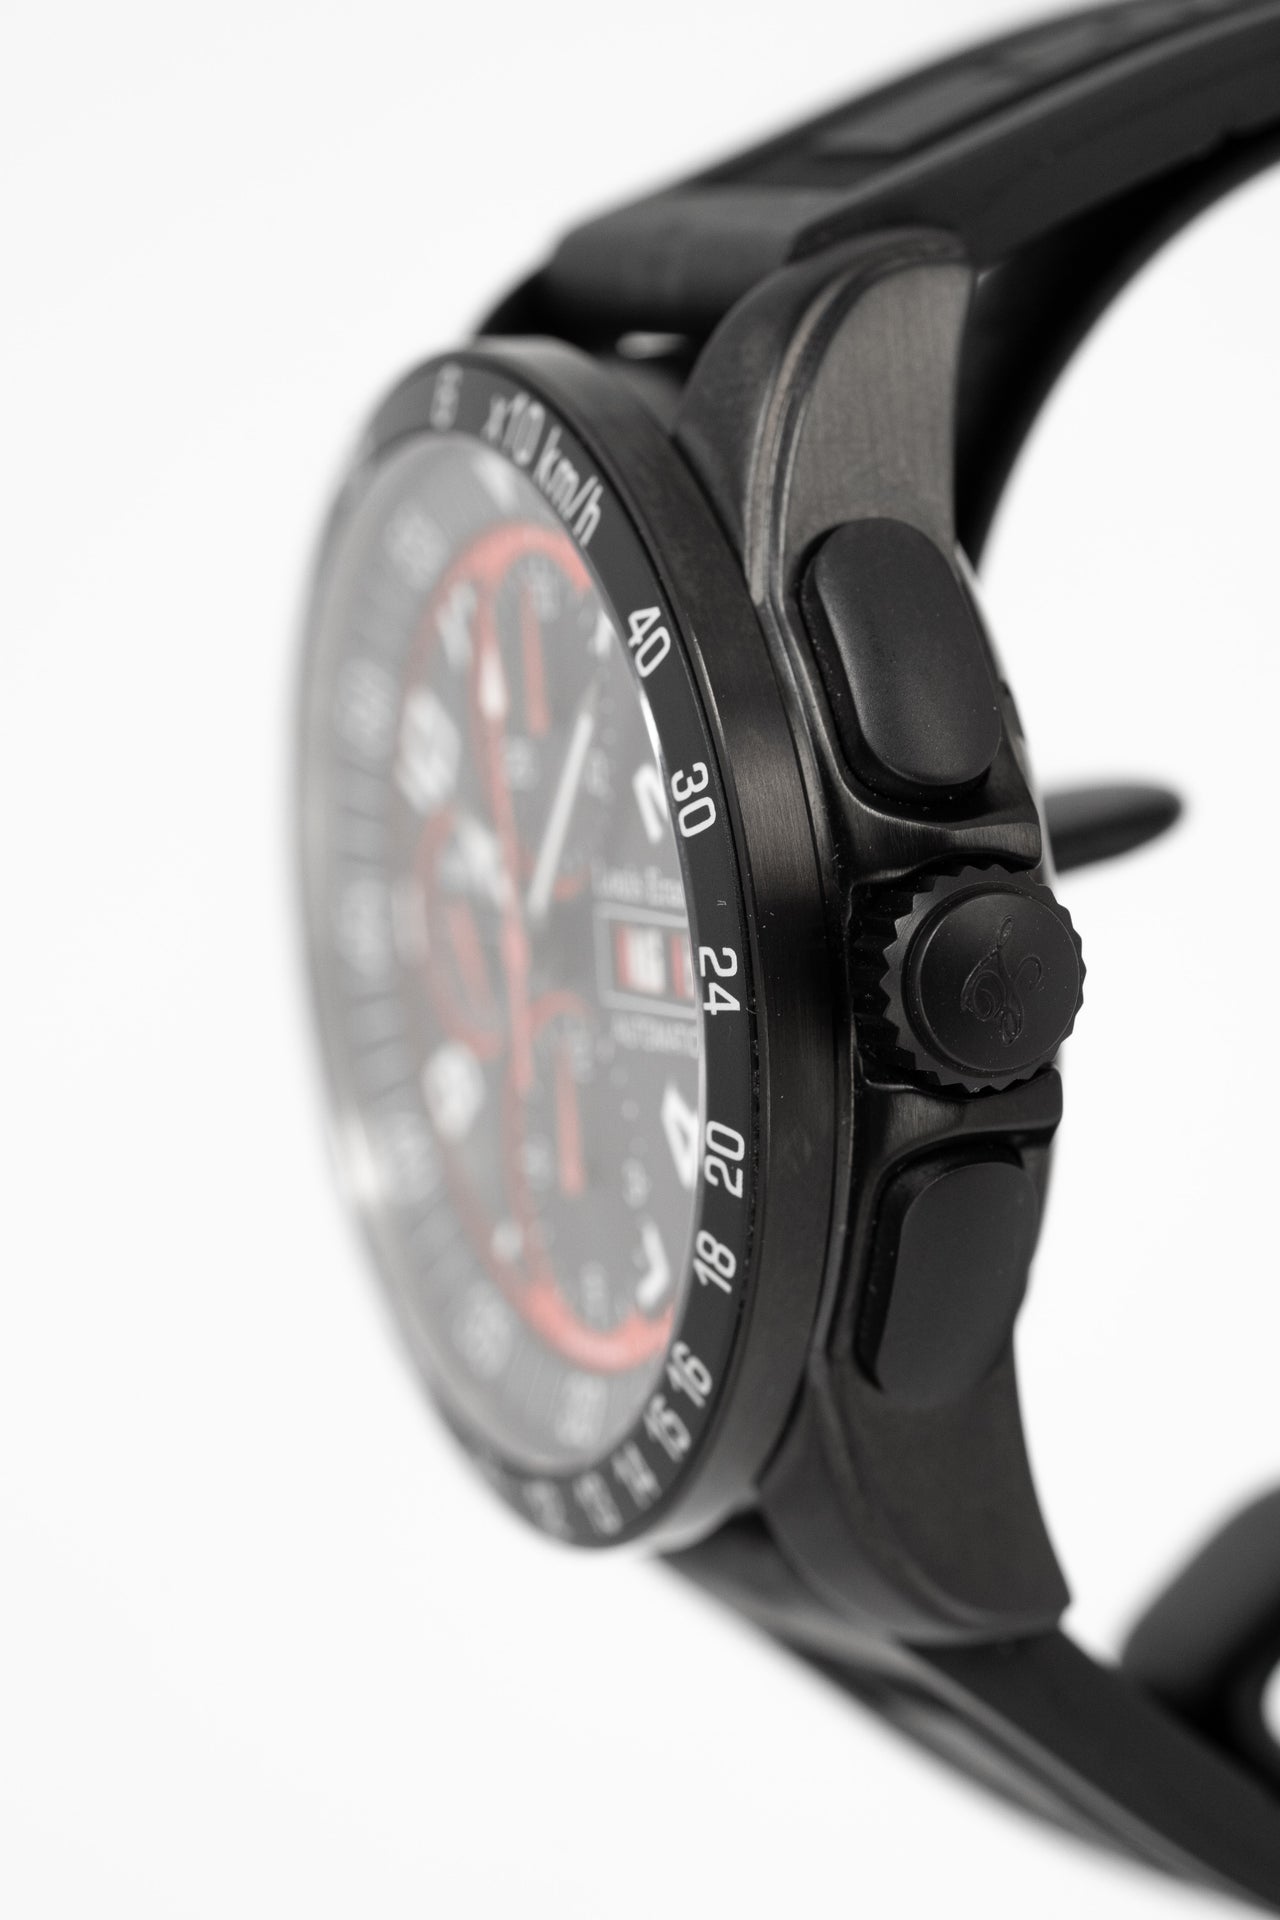 Louis Erard Men's La Sportive Chronograph Grey / Black Dial Black Leather Strap Automatic Watch 78119TS02.BVD72